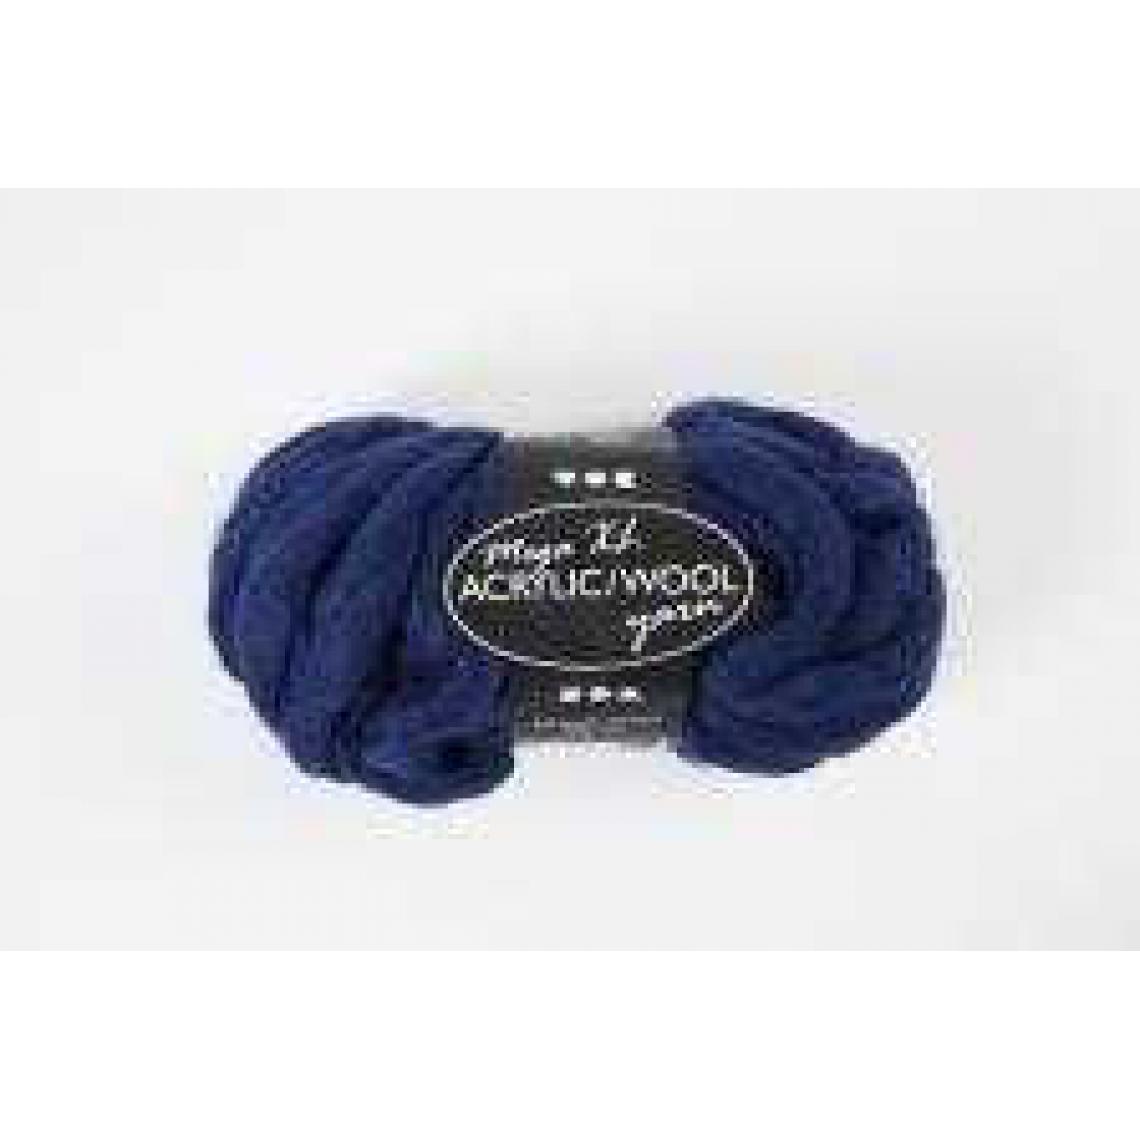 Inconnu - Pelote de laine Acrylique XL mélangée avec de la laine, L: 15 m, bleu foncé, mega, 300gr - Dessin et peinture